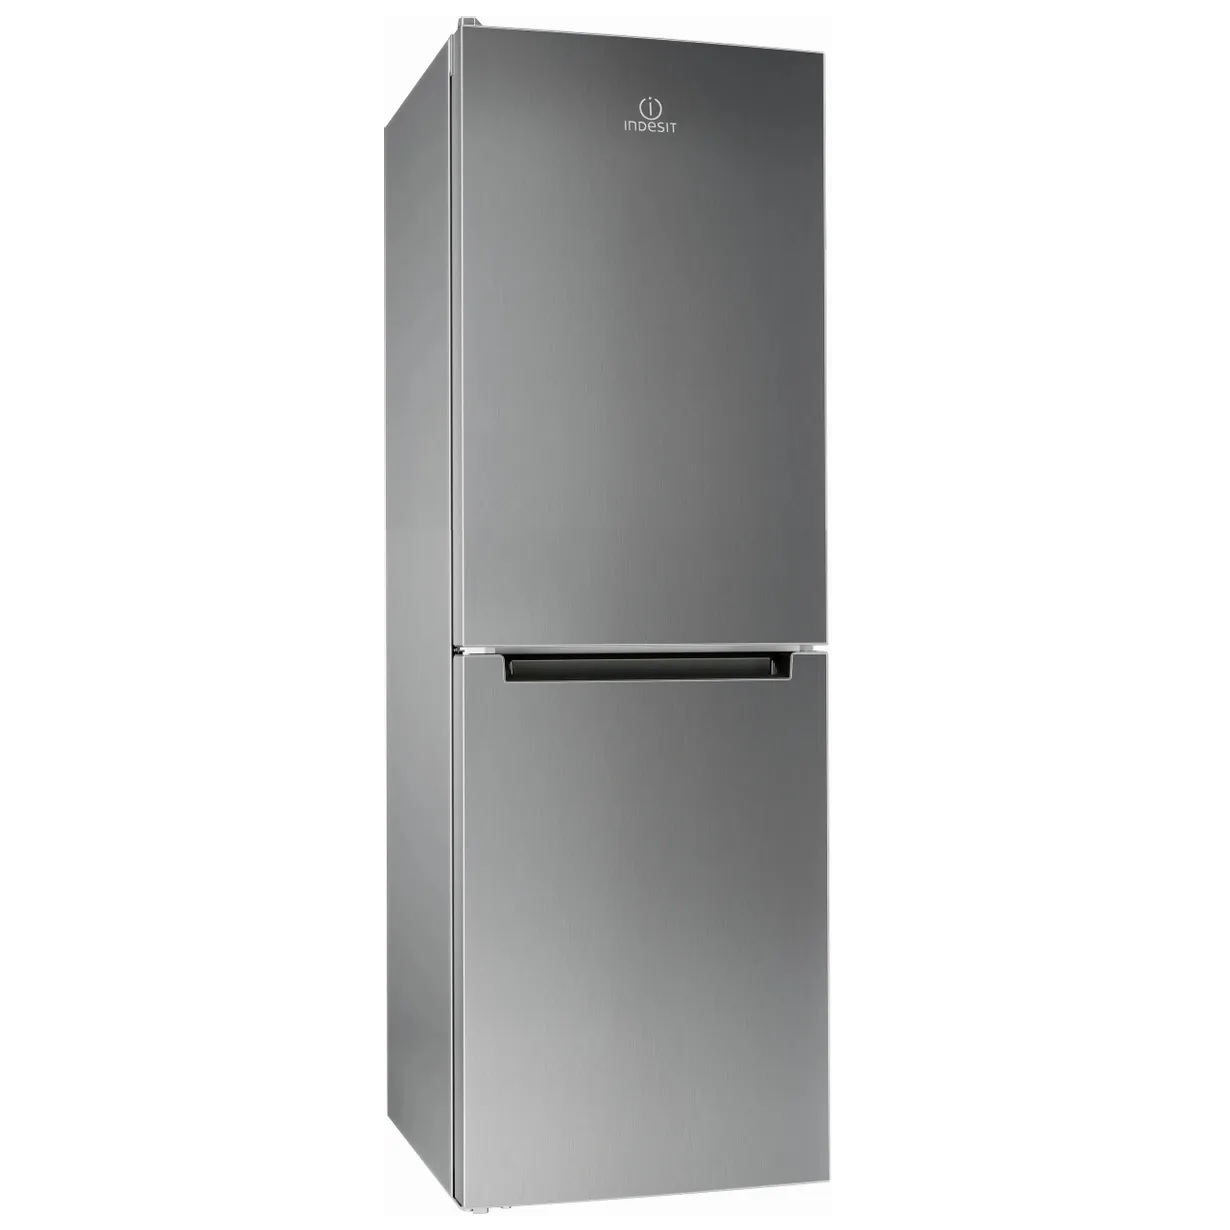 Холодильник Indesit DS 4160 S серебристый двухкамерный холодильник indesit ds 4160 w